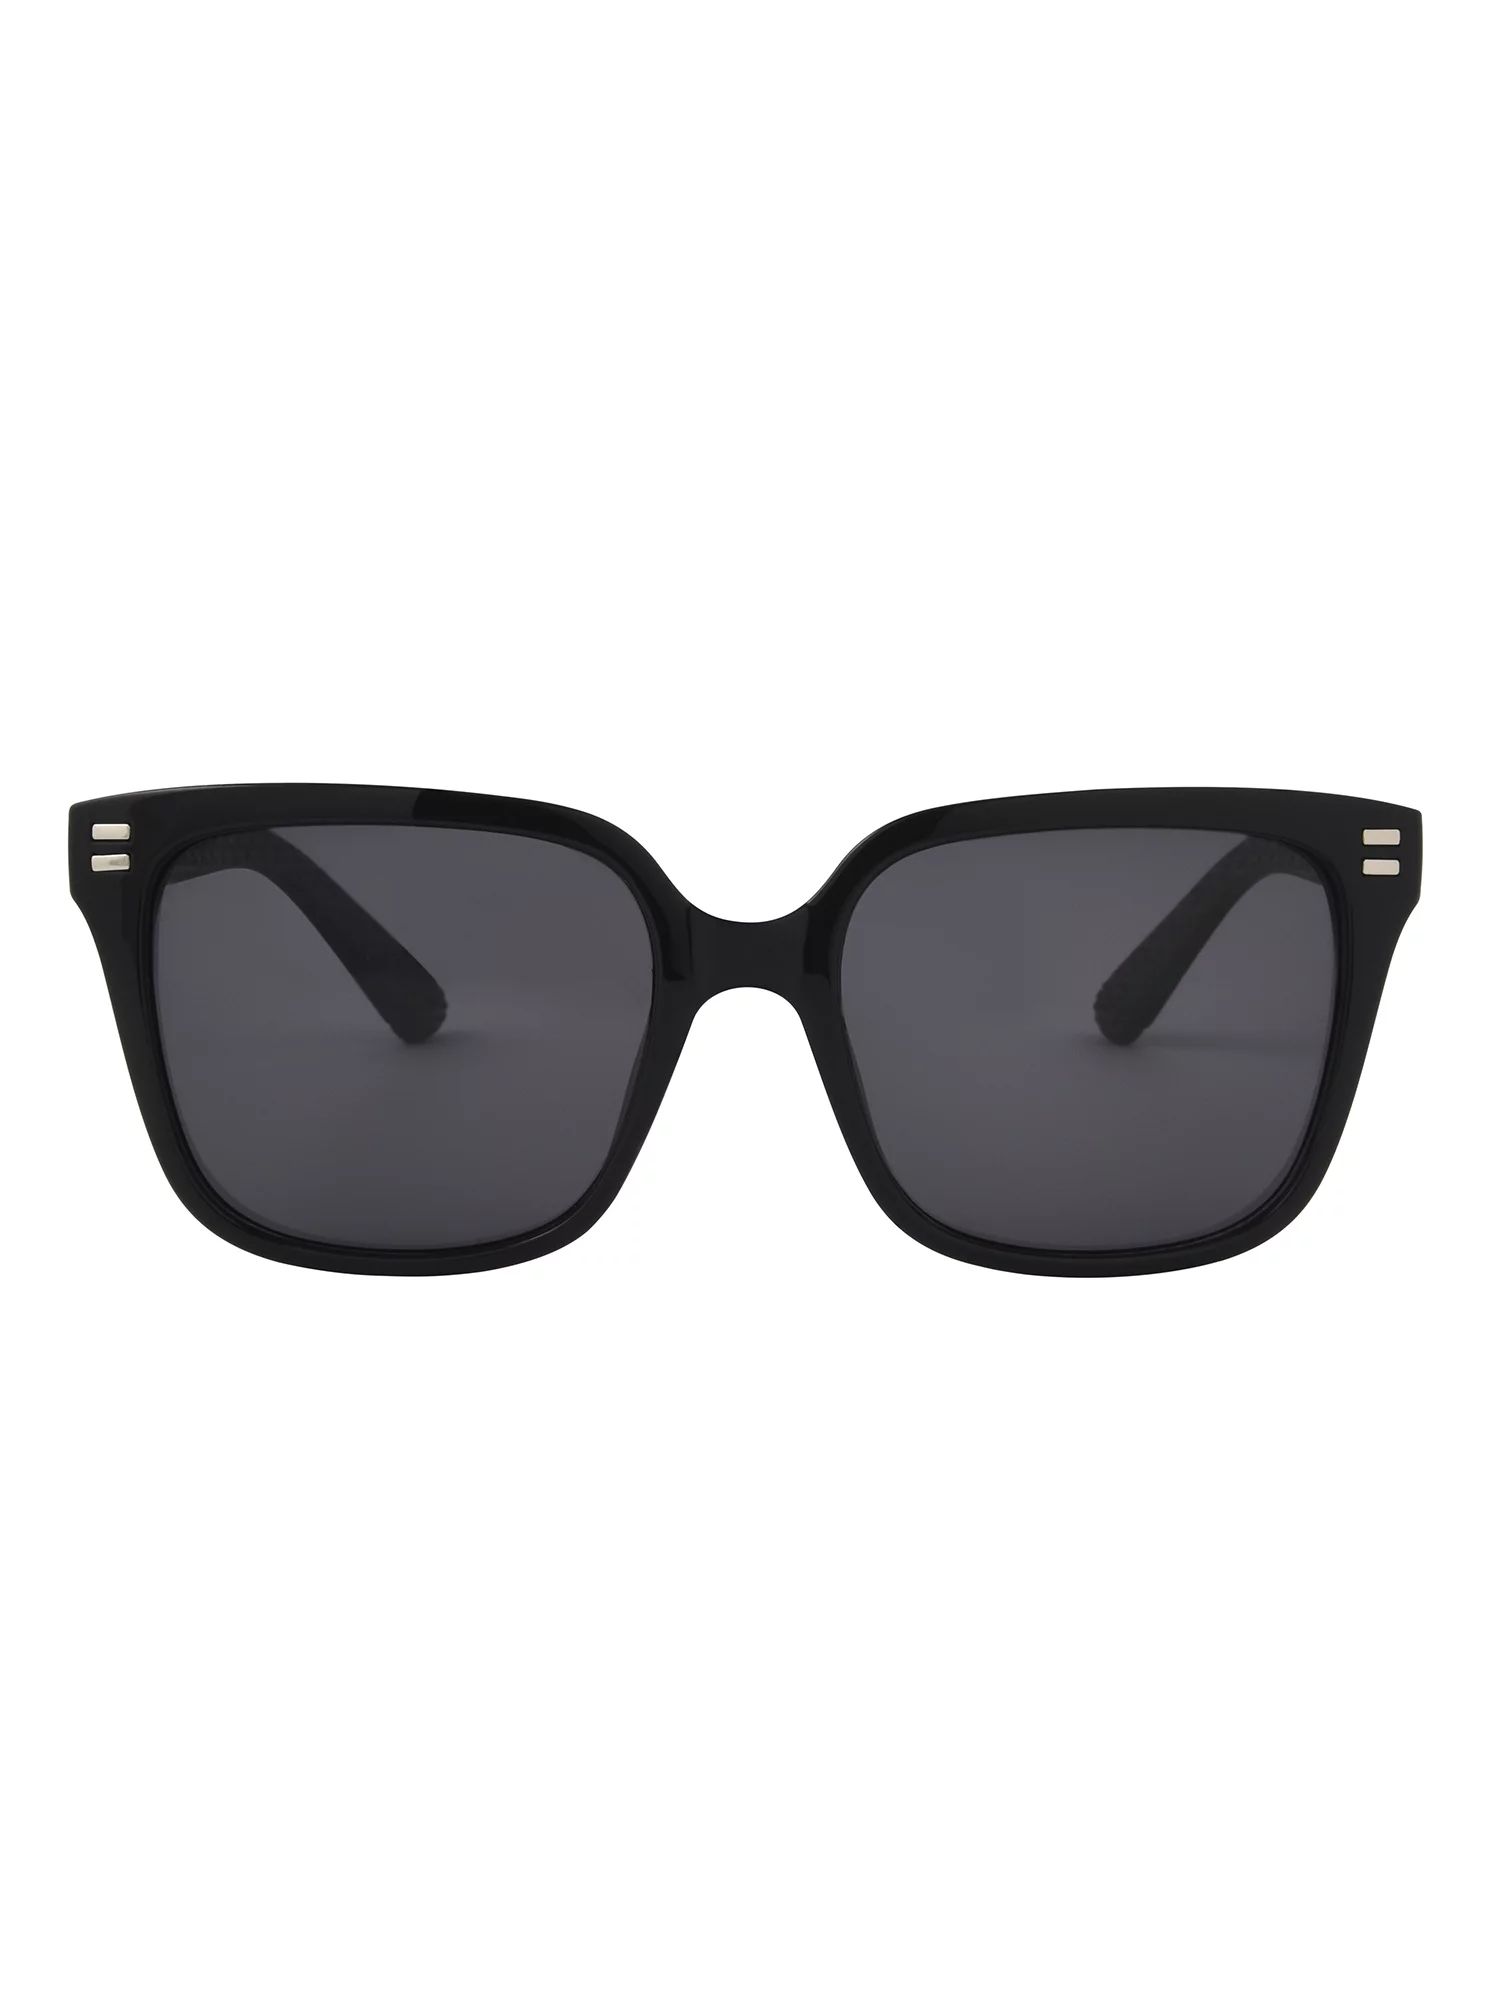 Foster Grant Women's Square Black Sunglasses | Walmart (US)